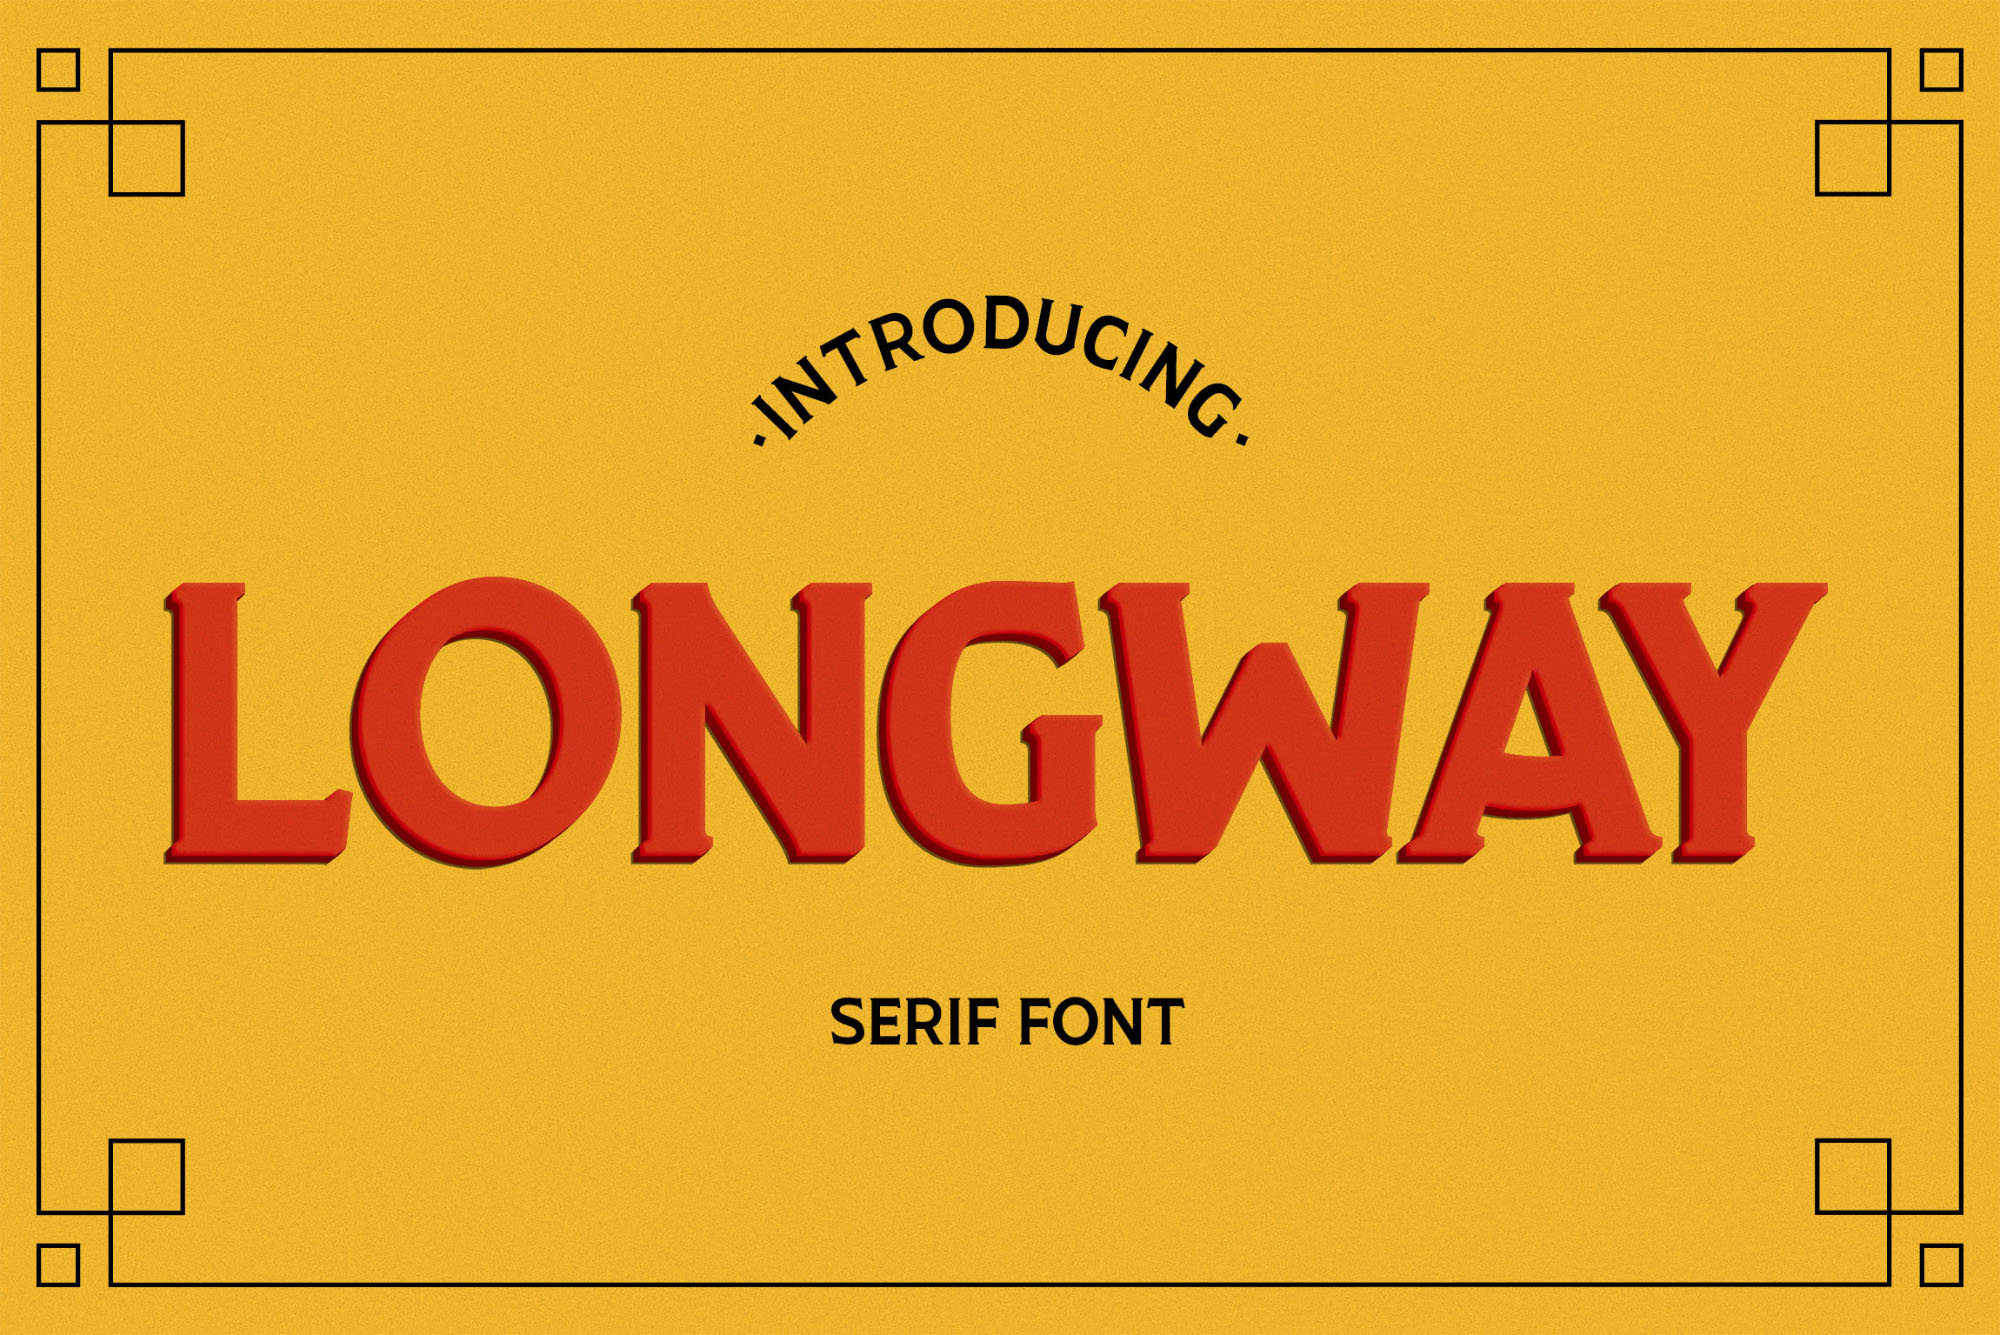 品牌设计专属全大写英文衬线字体 Longway Serif